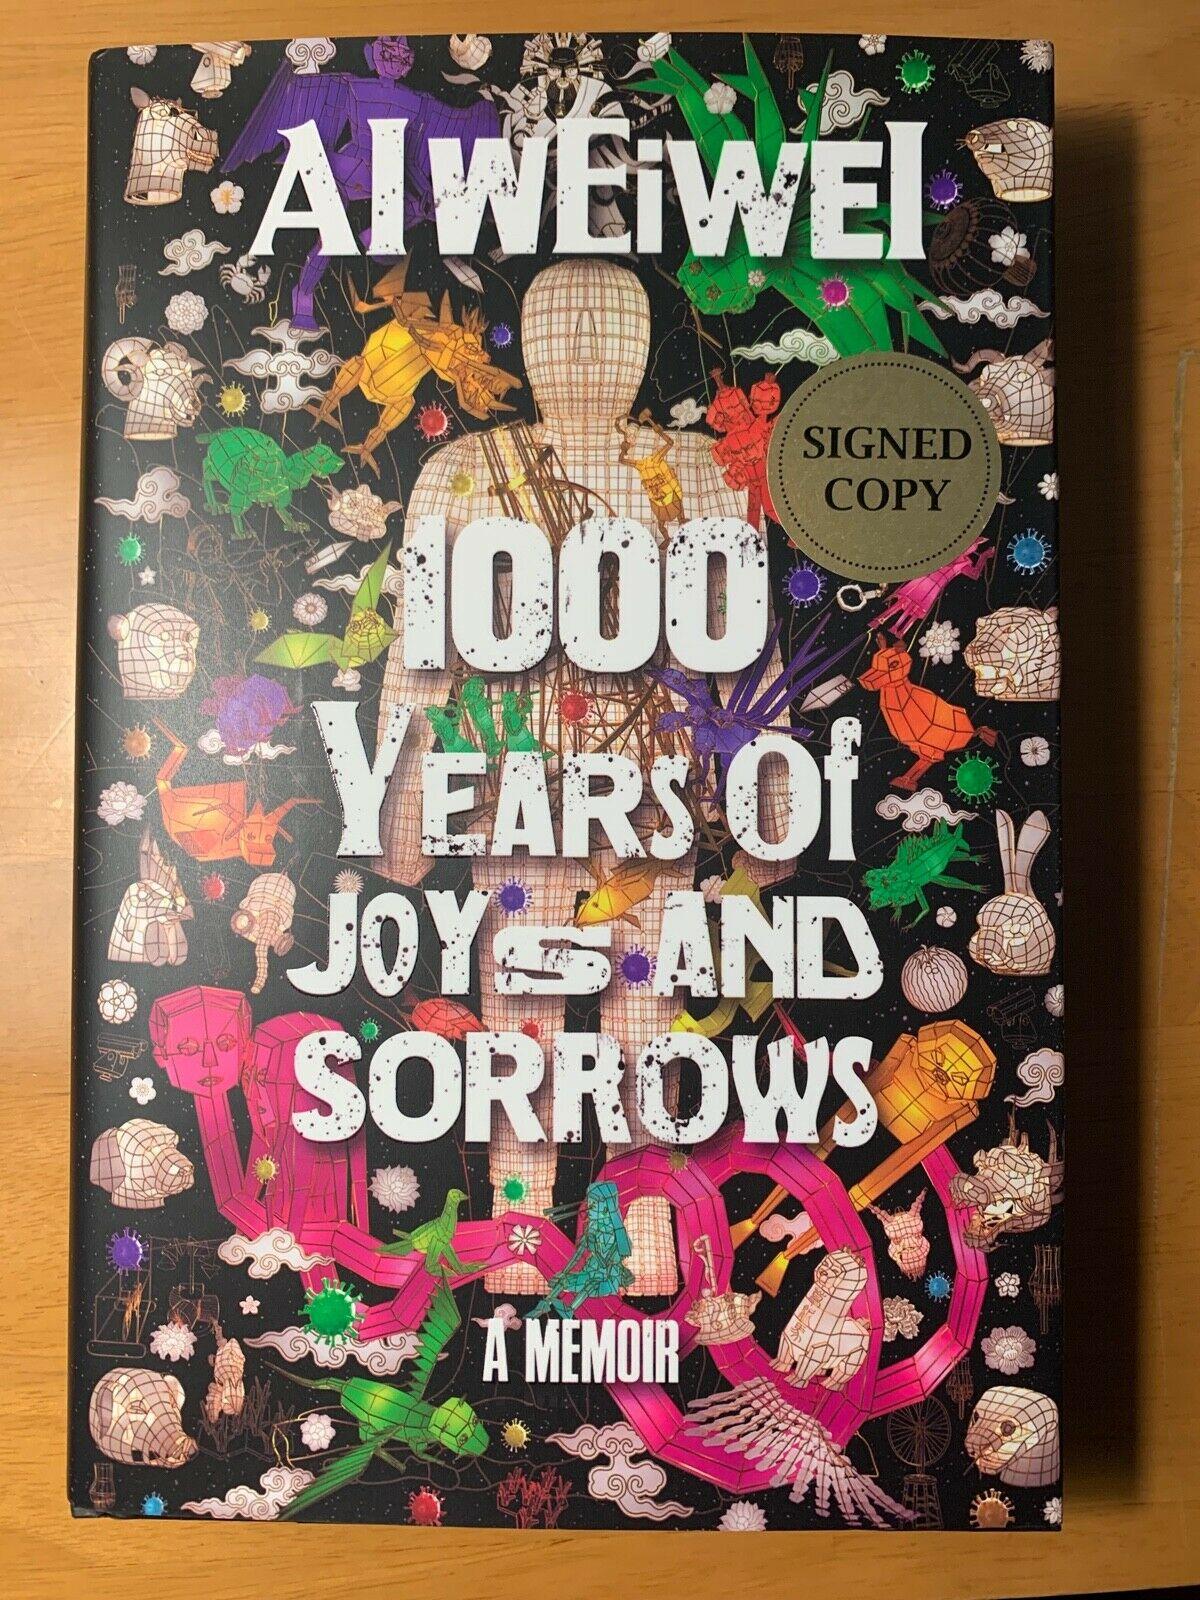 Erstausgabe 1000 Years of Joys and Sorrows, signierte Kopie von Ai weiwei – Print von Ai Weiwei